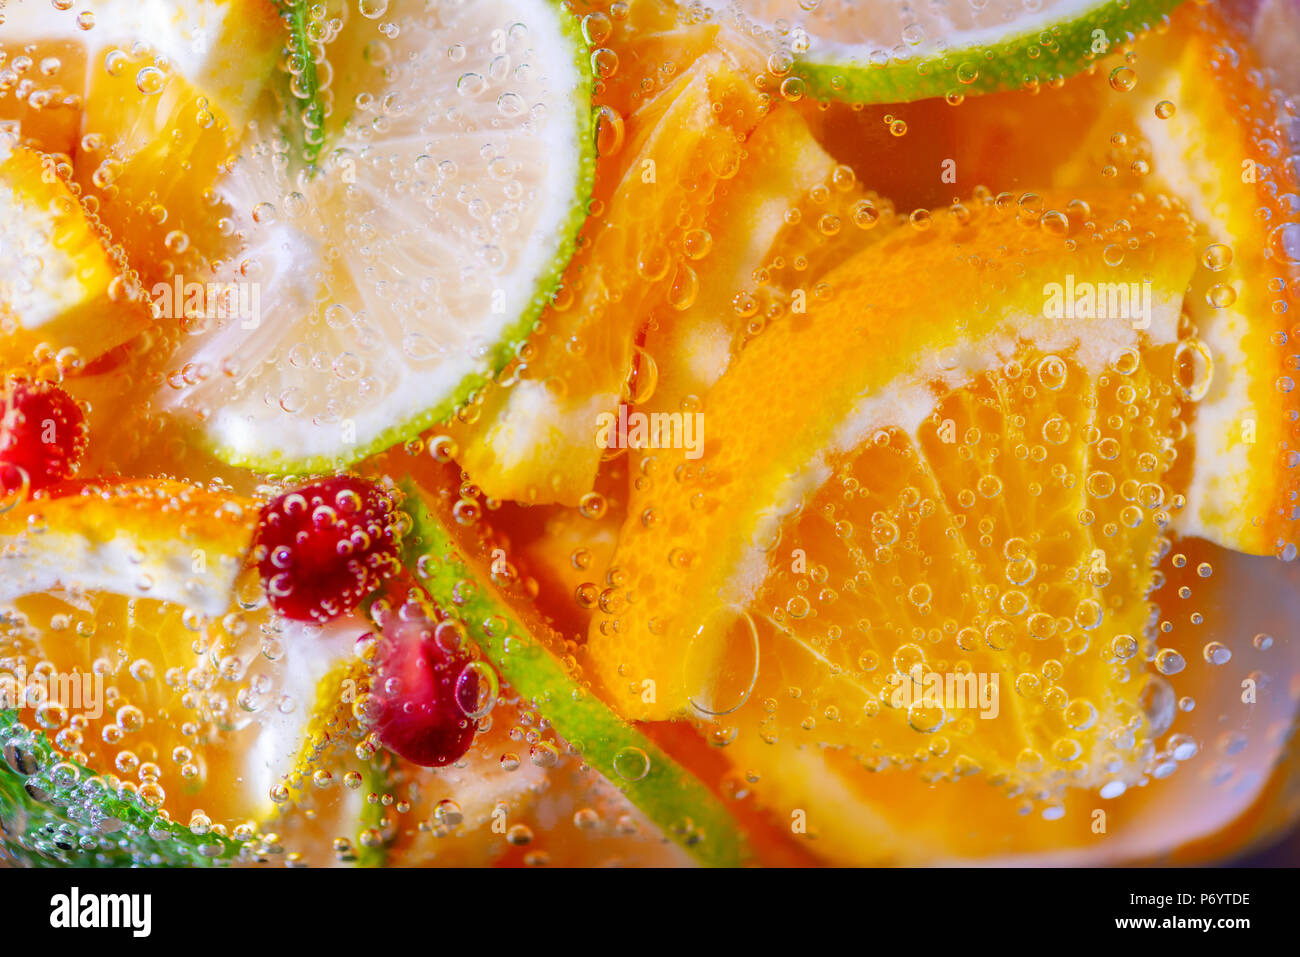 Disegno alla moda con limonata agrumi e menta come sfondo, concetto di mangiare sano Foto Stock